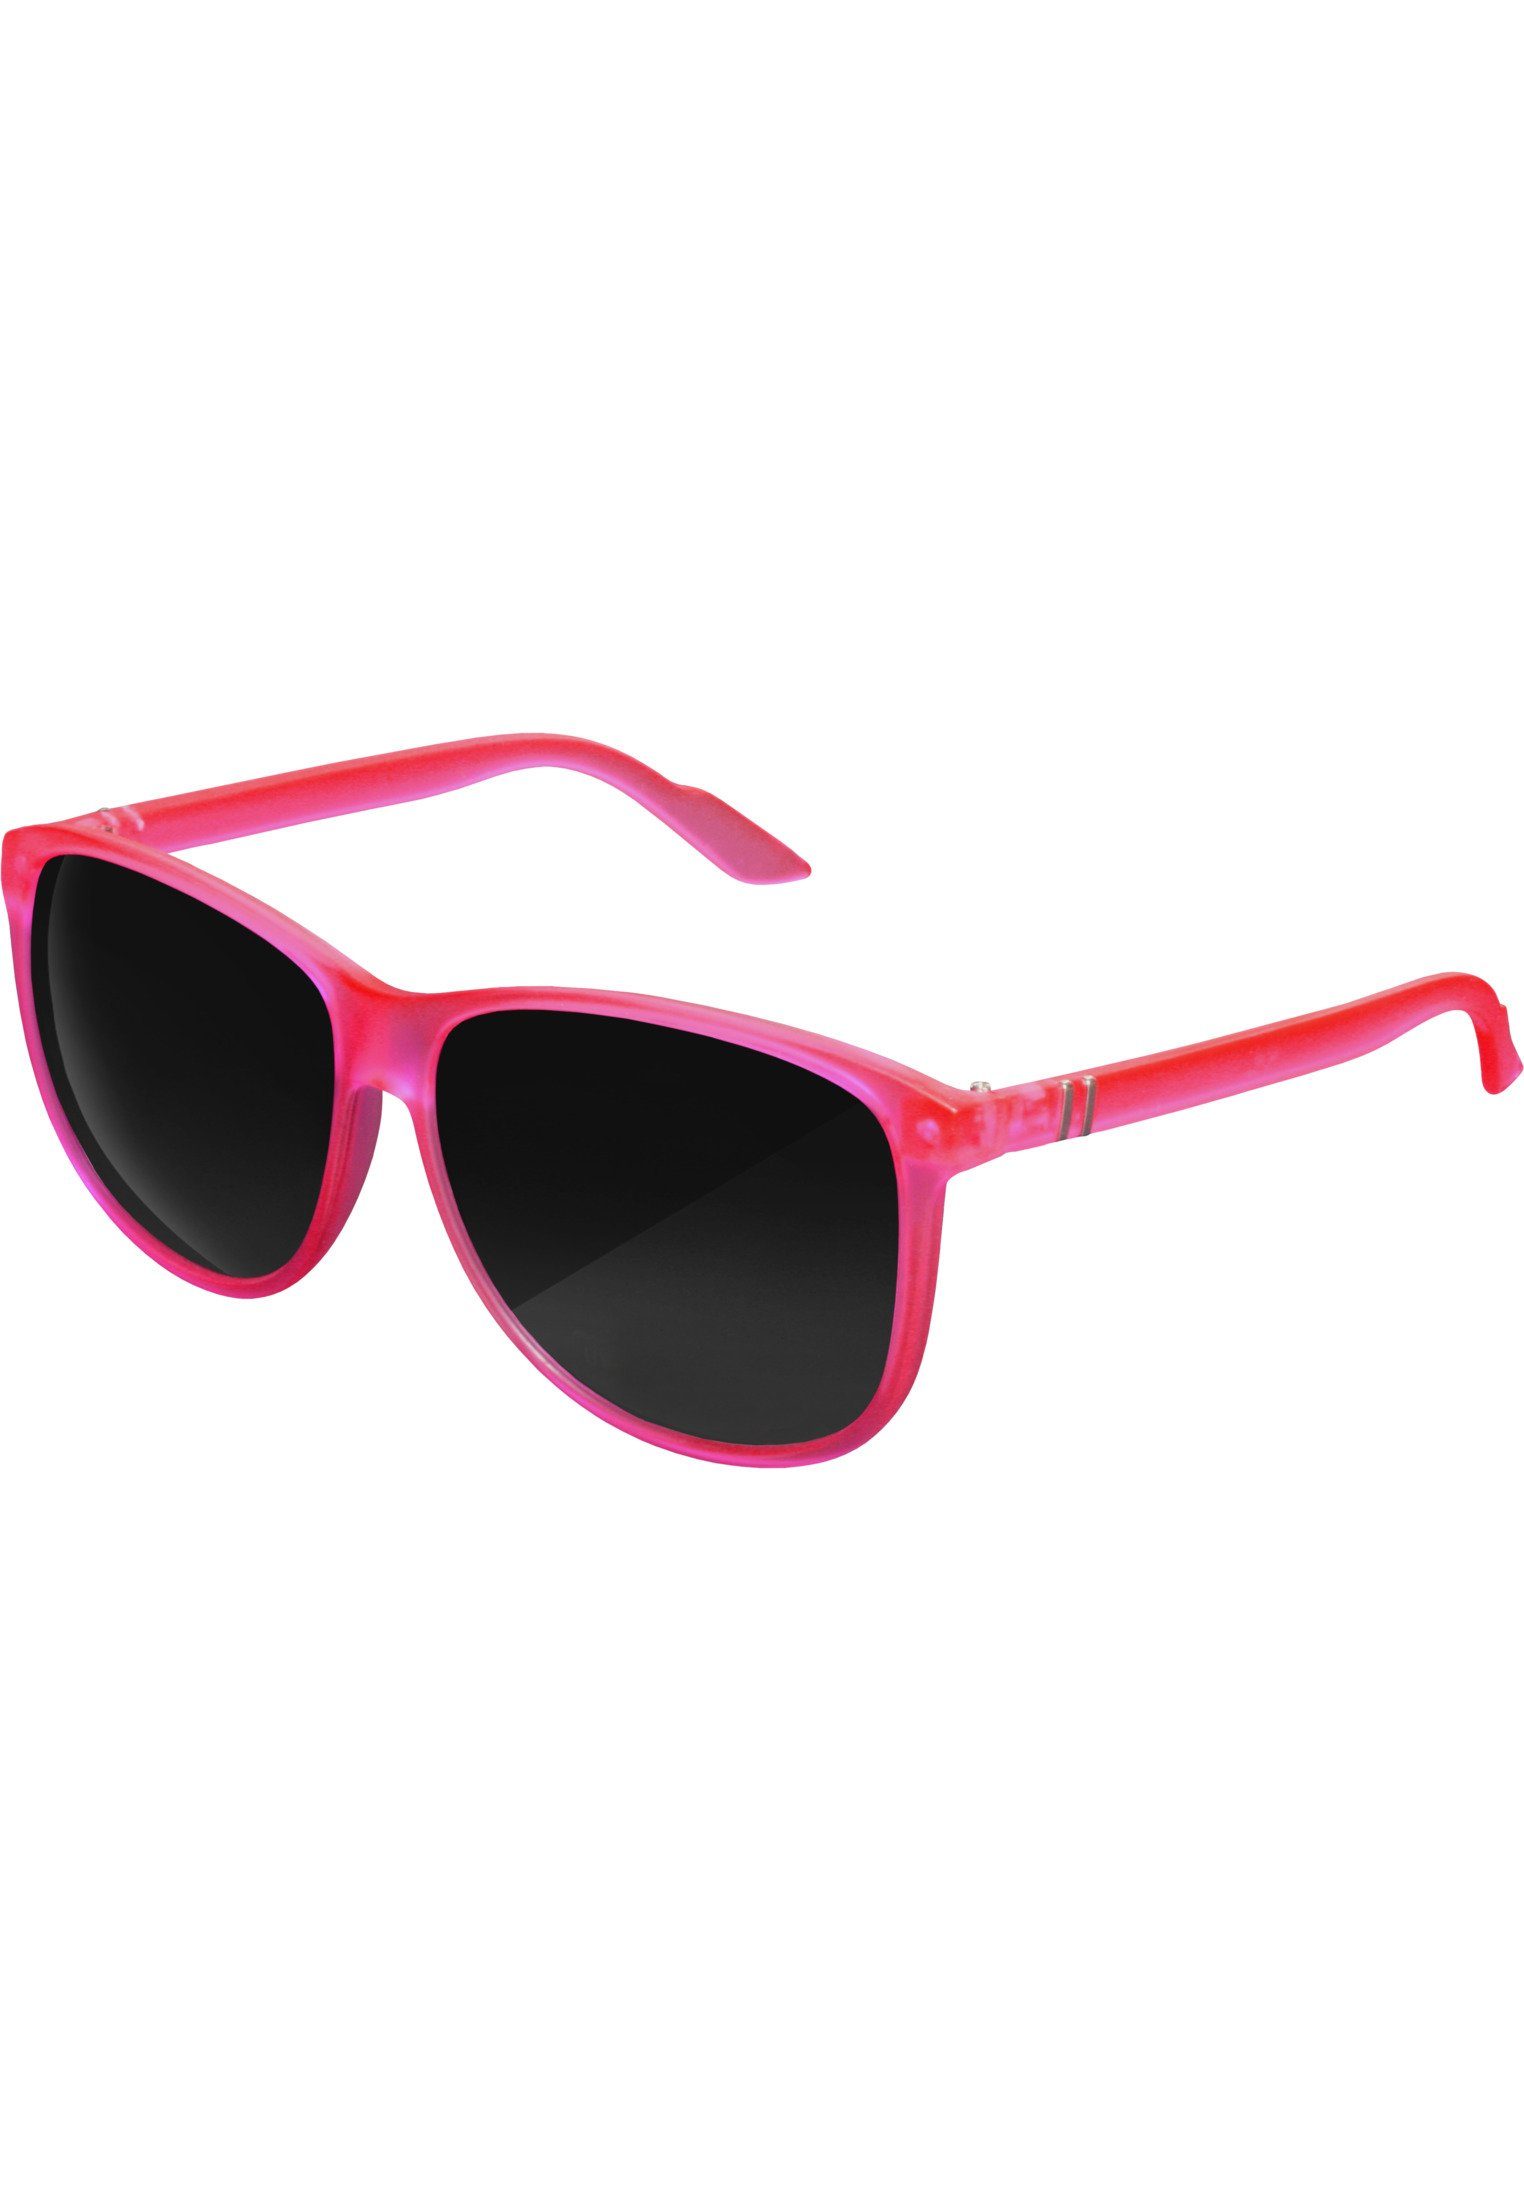 MSTRDS Sonnenbrille Accessoires Sunglasses Chirwa neonpink | Sonnenbrillen